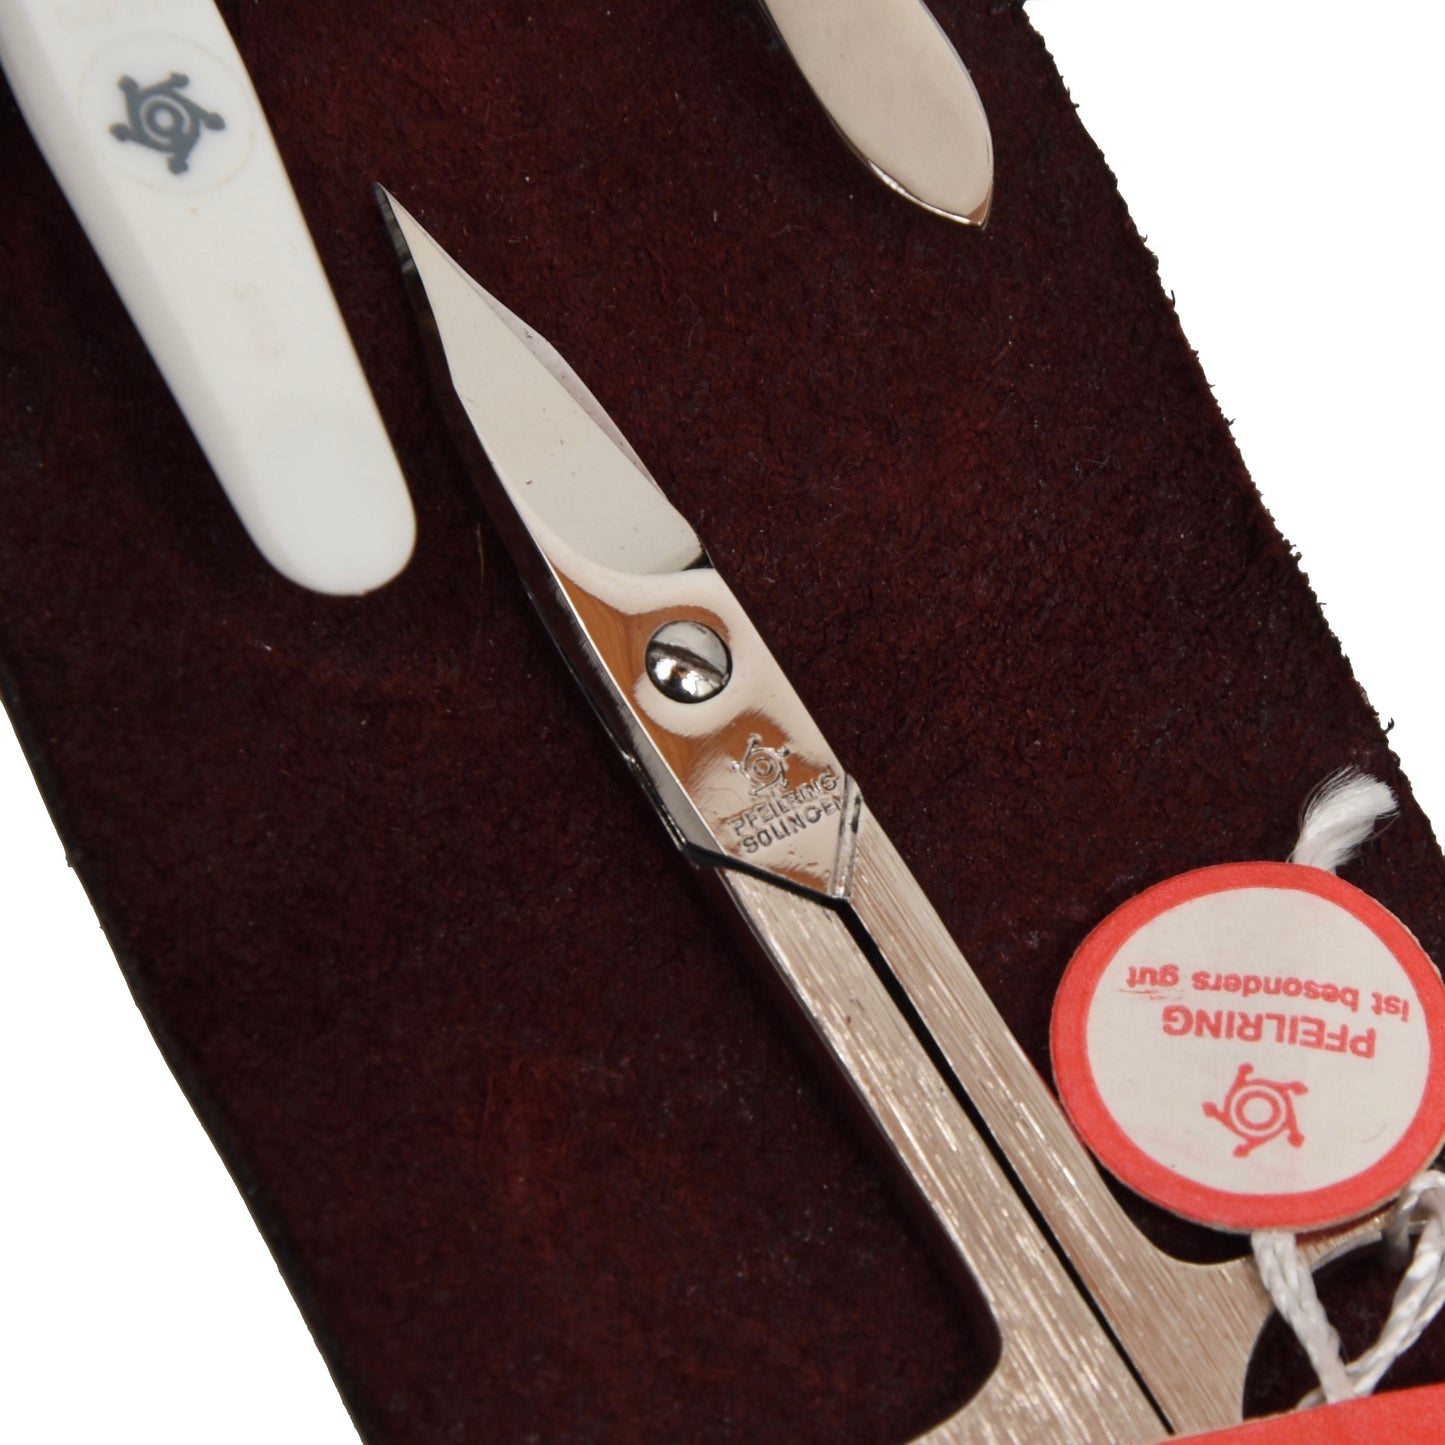 Pfeilring 3 Piece Manicure Set + Leather Case